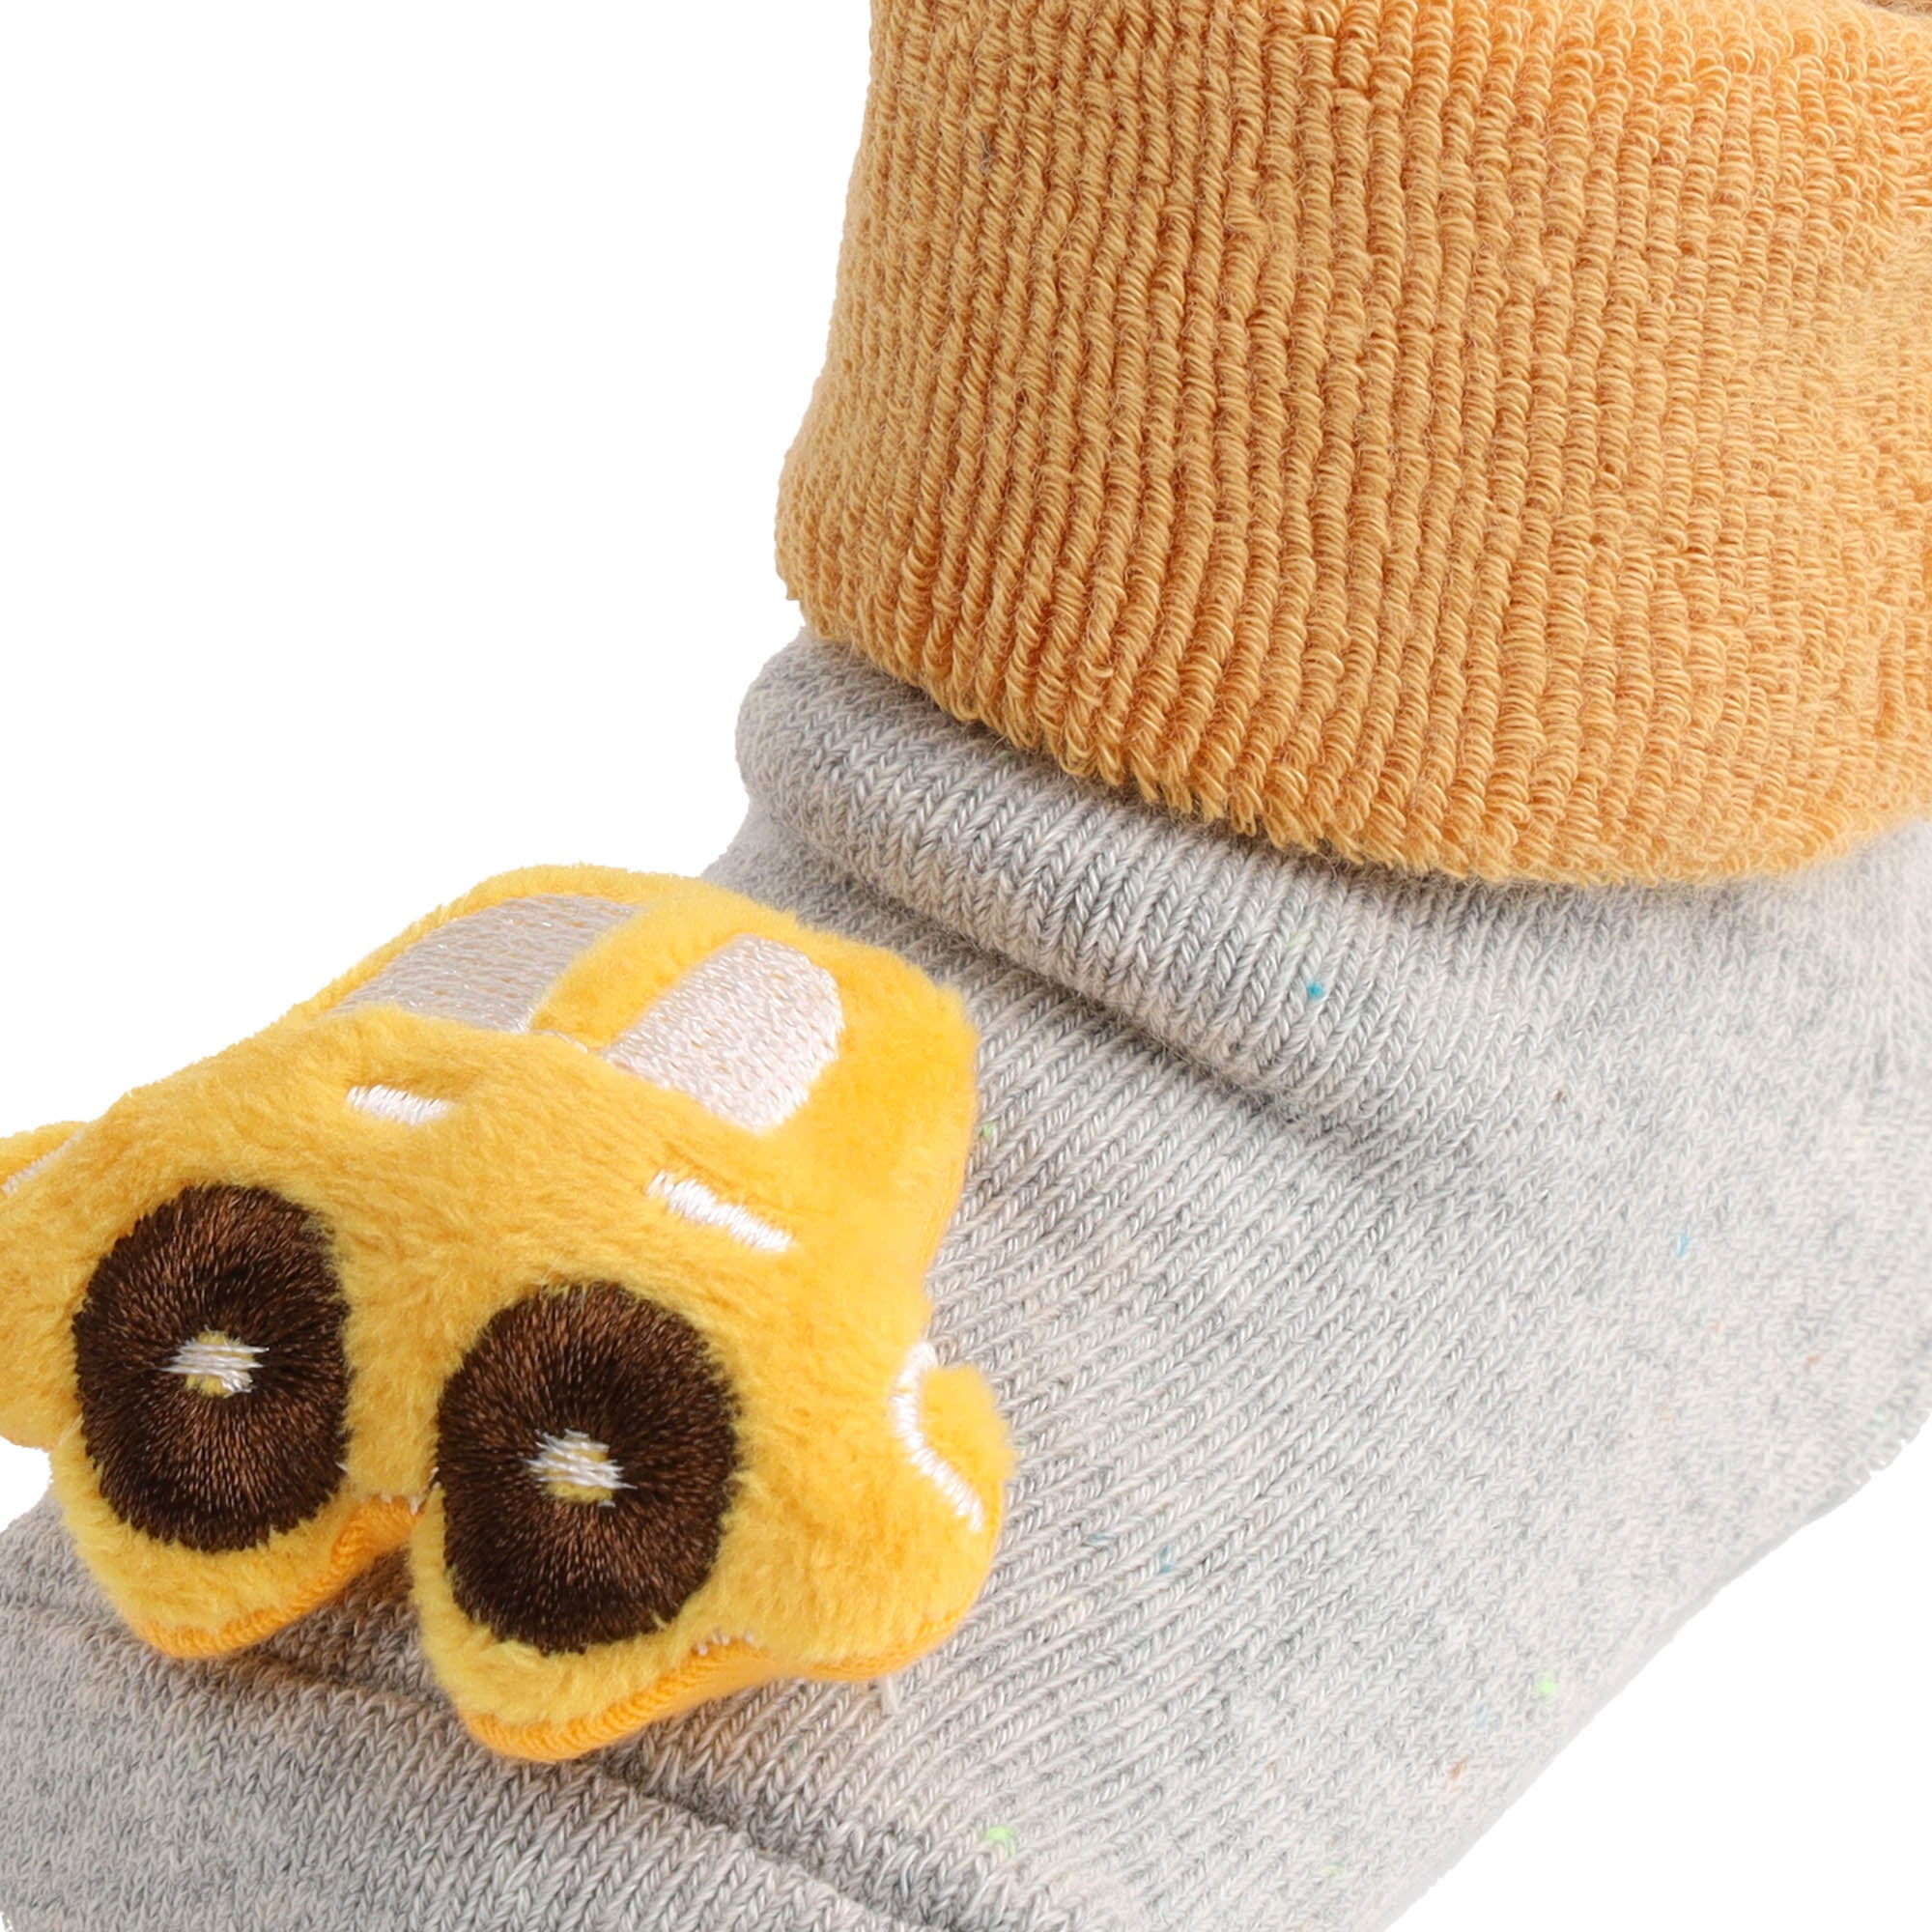 Kicks & Crawl- Cute Car Yellow & Blue 3D Socks - 2 Pack